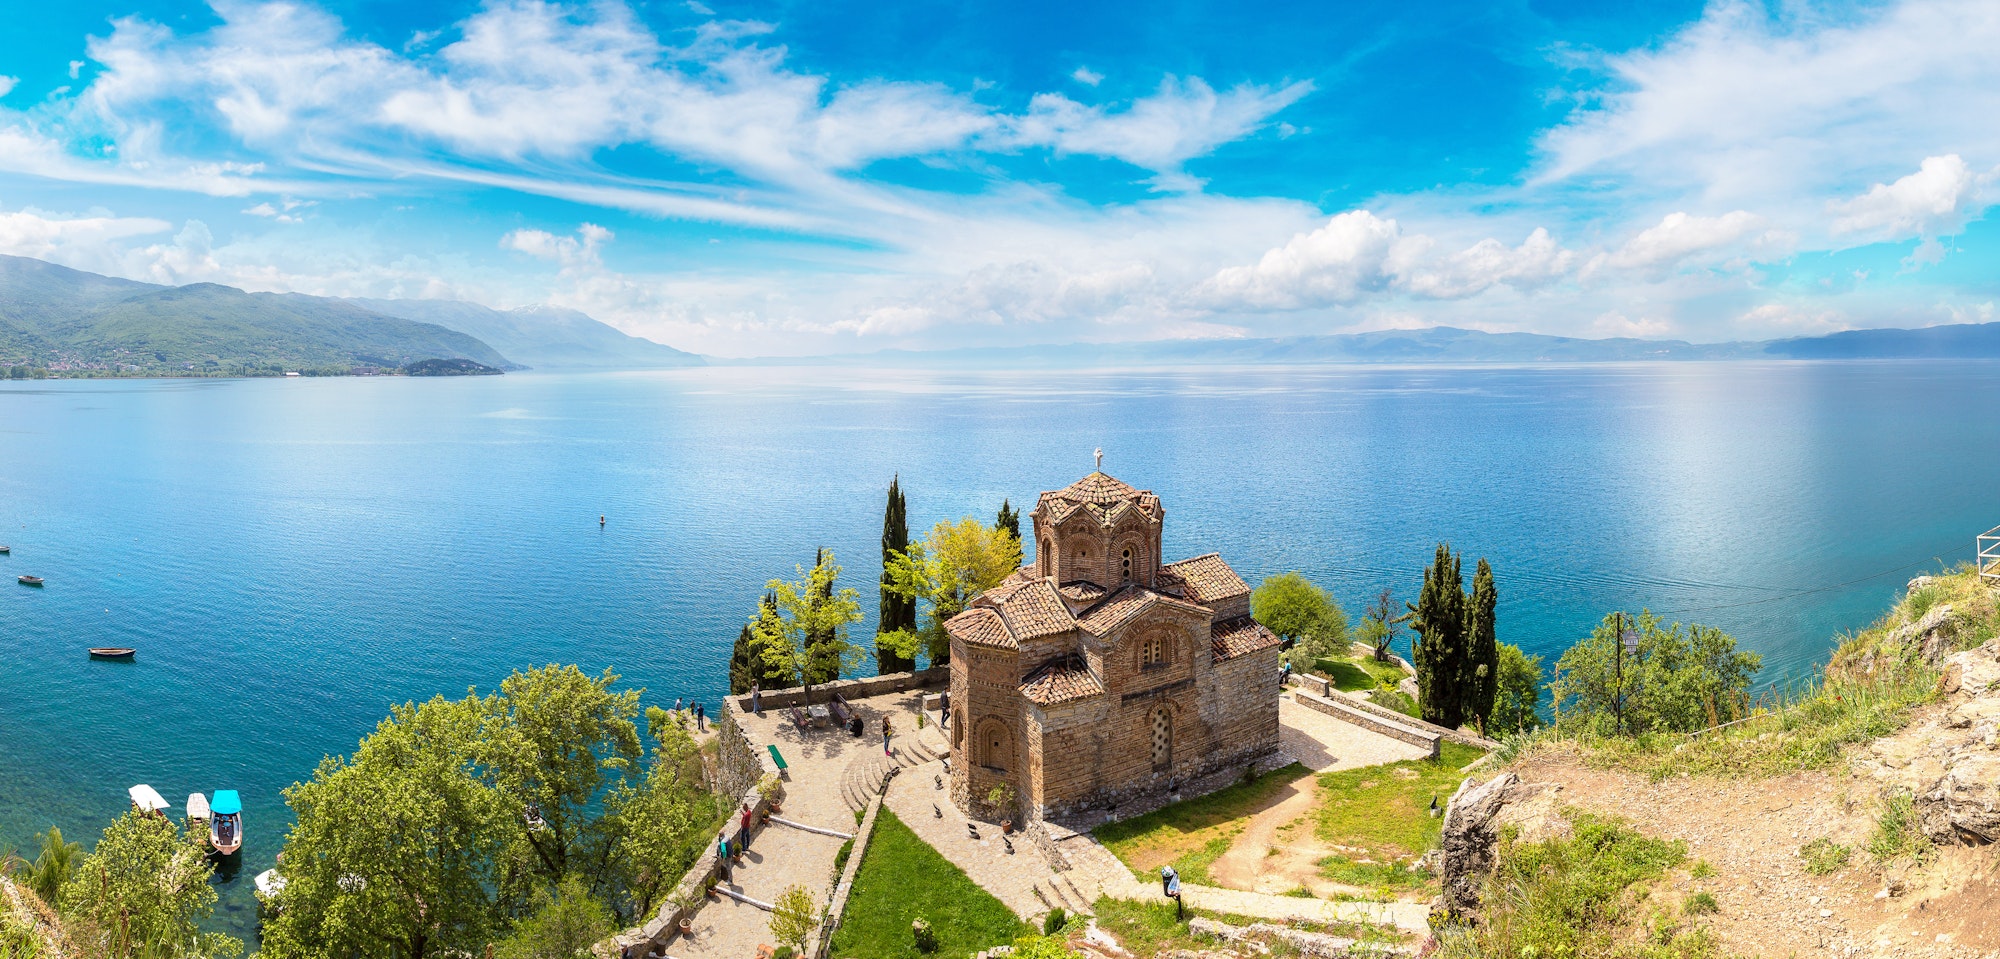 Church of St John at Kaneo, Lake Ohrid, Macedonia